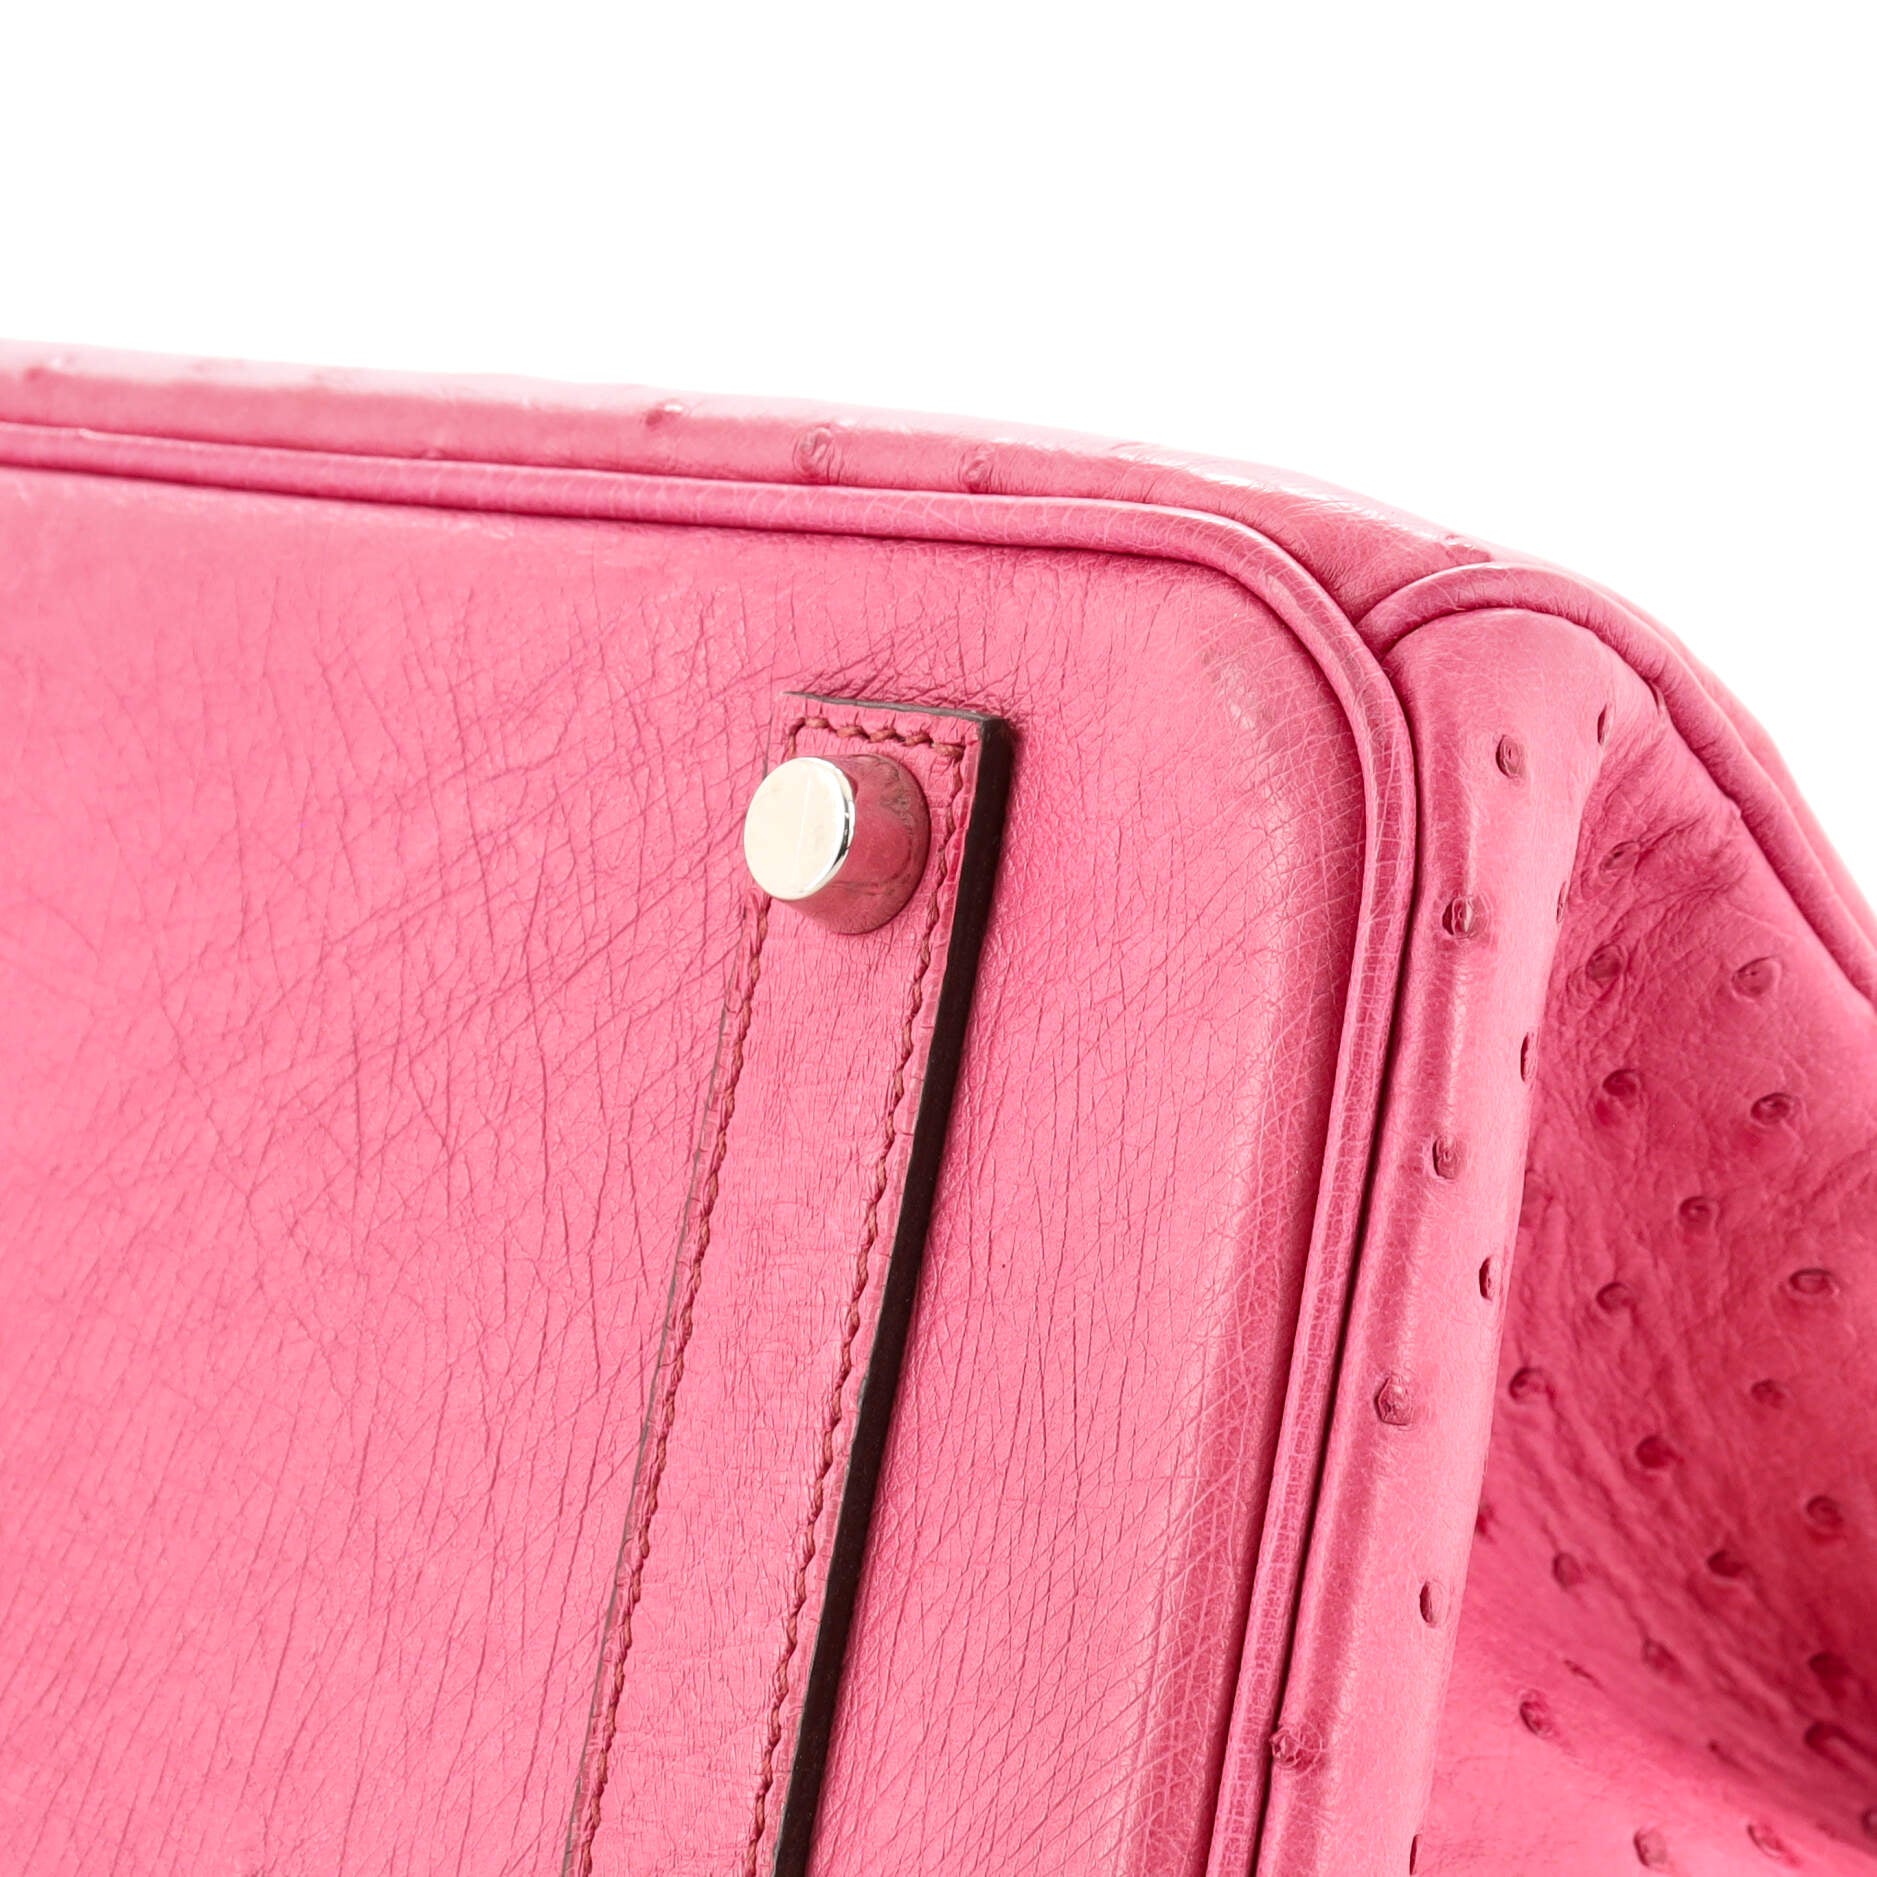 Hermès Fuchsia Birkin 35cm of Ostrich with Palladium Hardware, Handbags &  Accessories Online, Ecommerce Retail